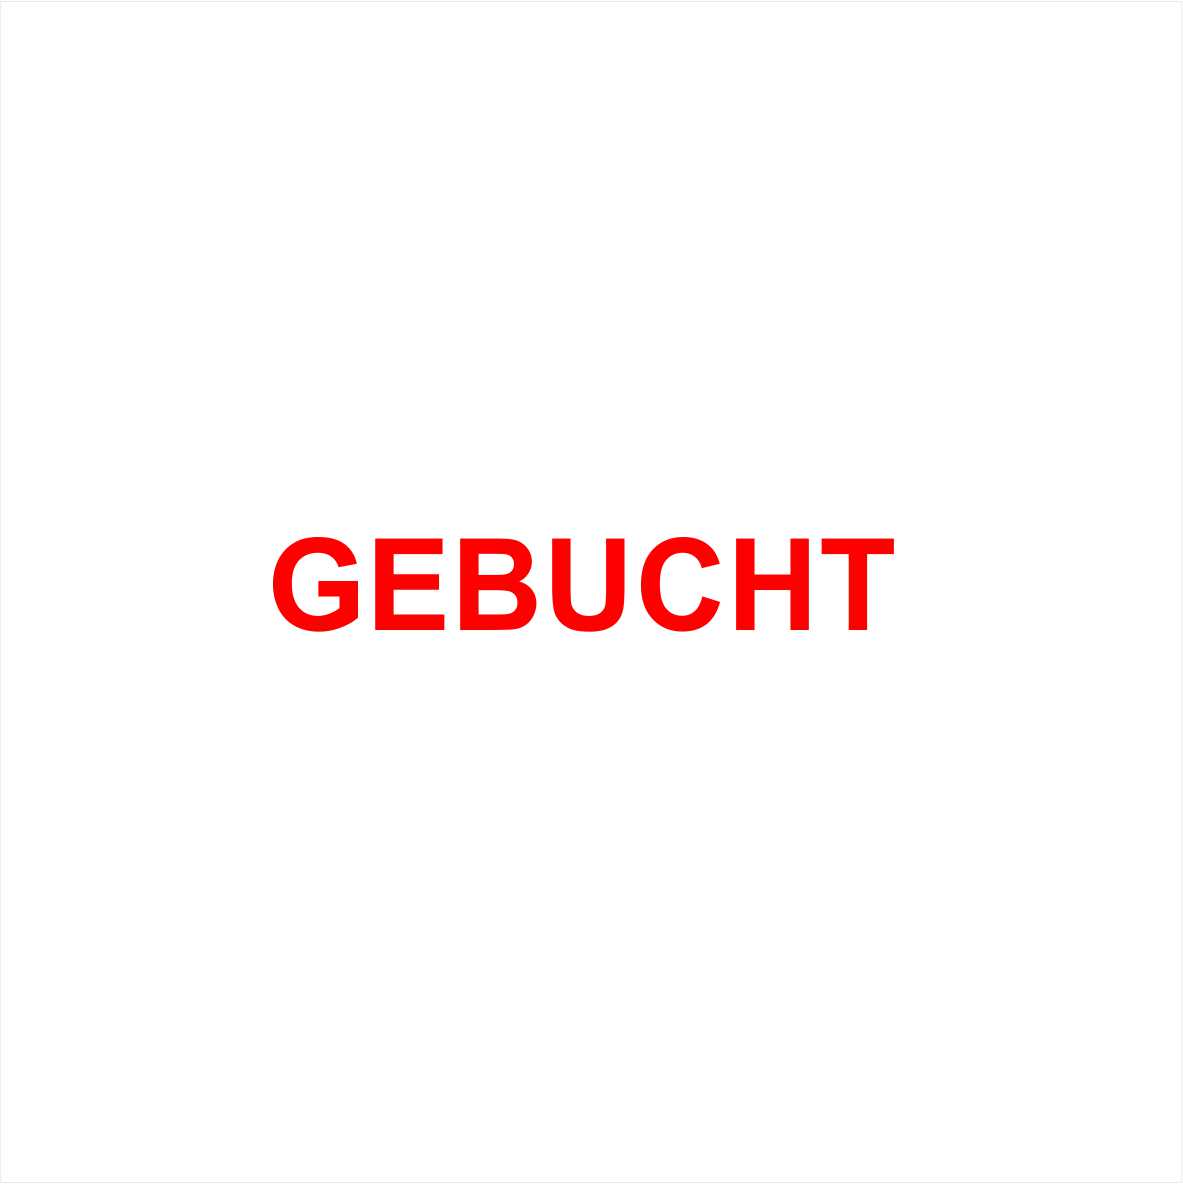 Printer 10 Text: GEBUCHT